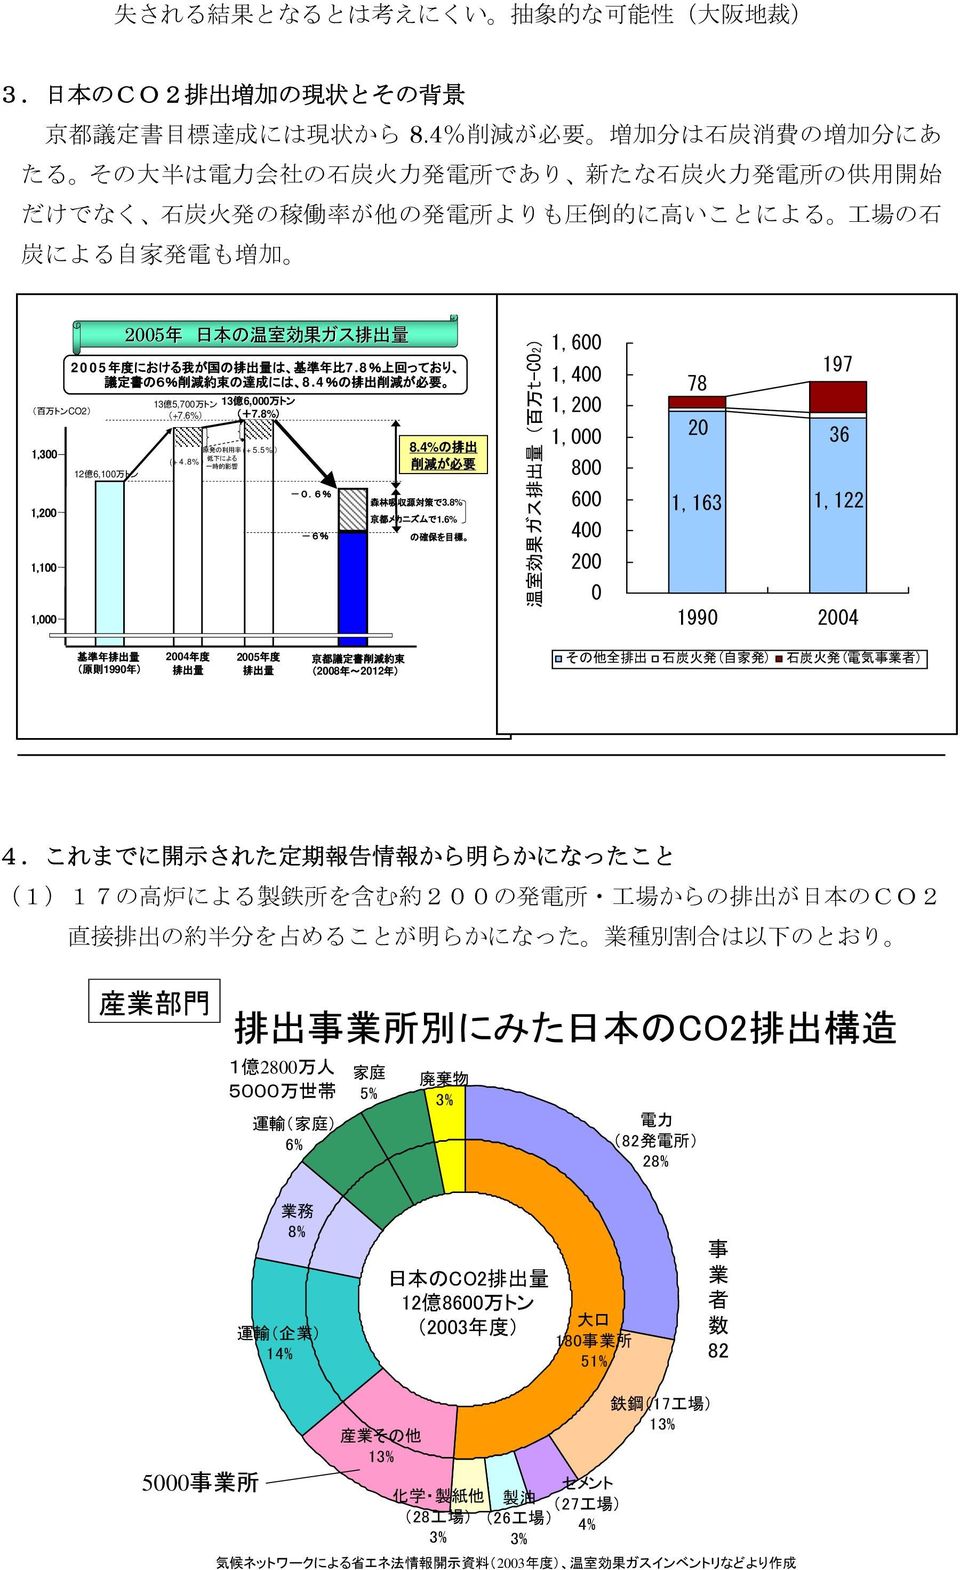 トンCO2) 1,300 1,200 1,100 1,000 12 億 6,100 万 トン 2005 年 日 本 の 温 室 効 果 ガス 排 出 量 2005 年 度 における 我 が 国 の 排 出 量 は 基 準 年 比 7.8% 上 回 っており 議 定 書 の6% 削 減 約 束 の 達 成 には 8.4%の 排 出 削 減 が 必 要 13 億 5,700 万 トン (+7.